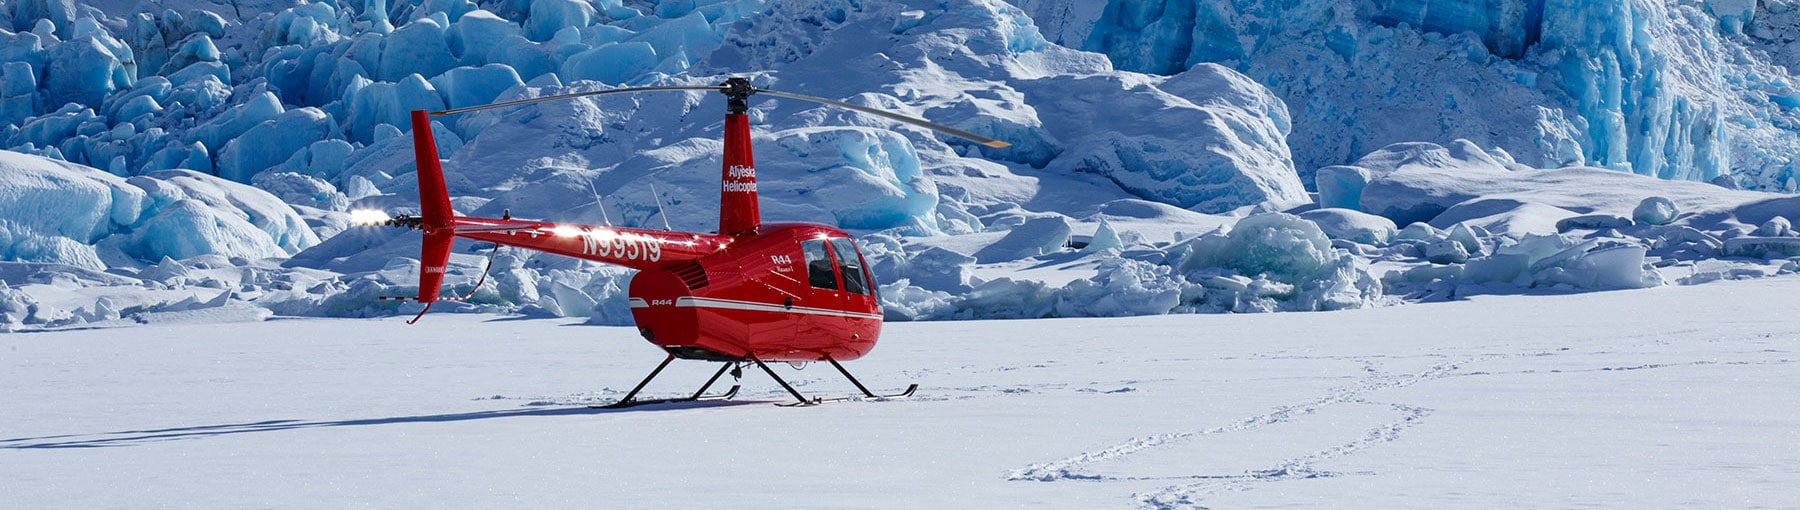 Helicopter landed on glacier.